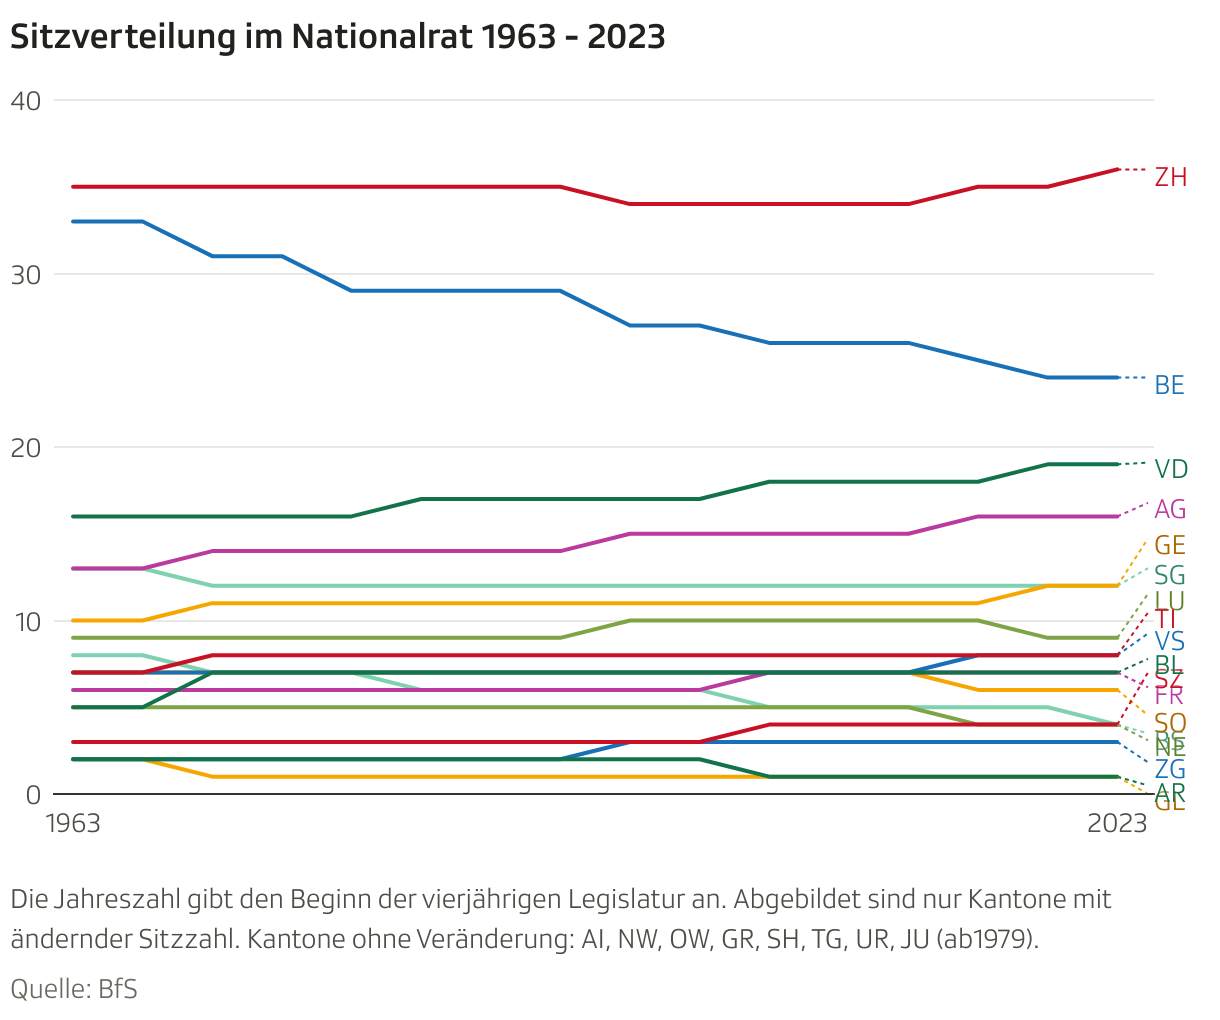 Kurvengrafik, welche die Veränderung der Sitzzahl der Kantone im Nationalrat angibt.